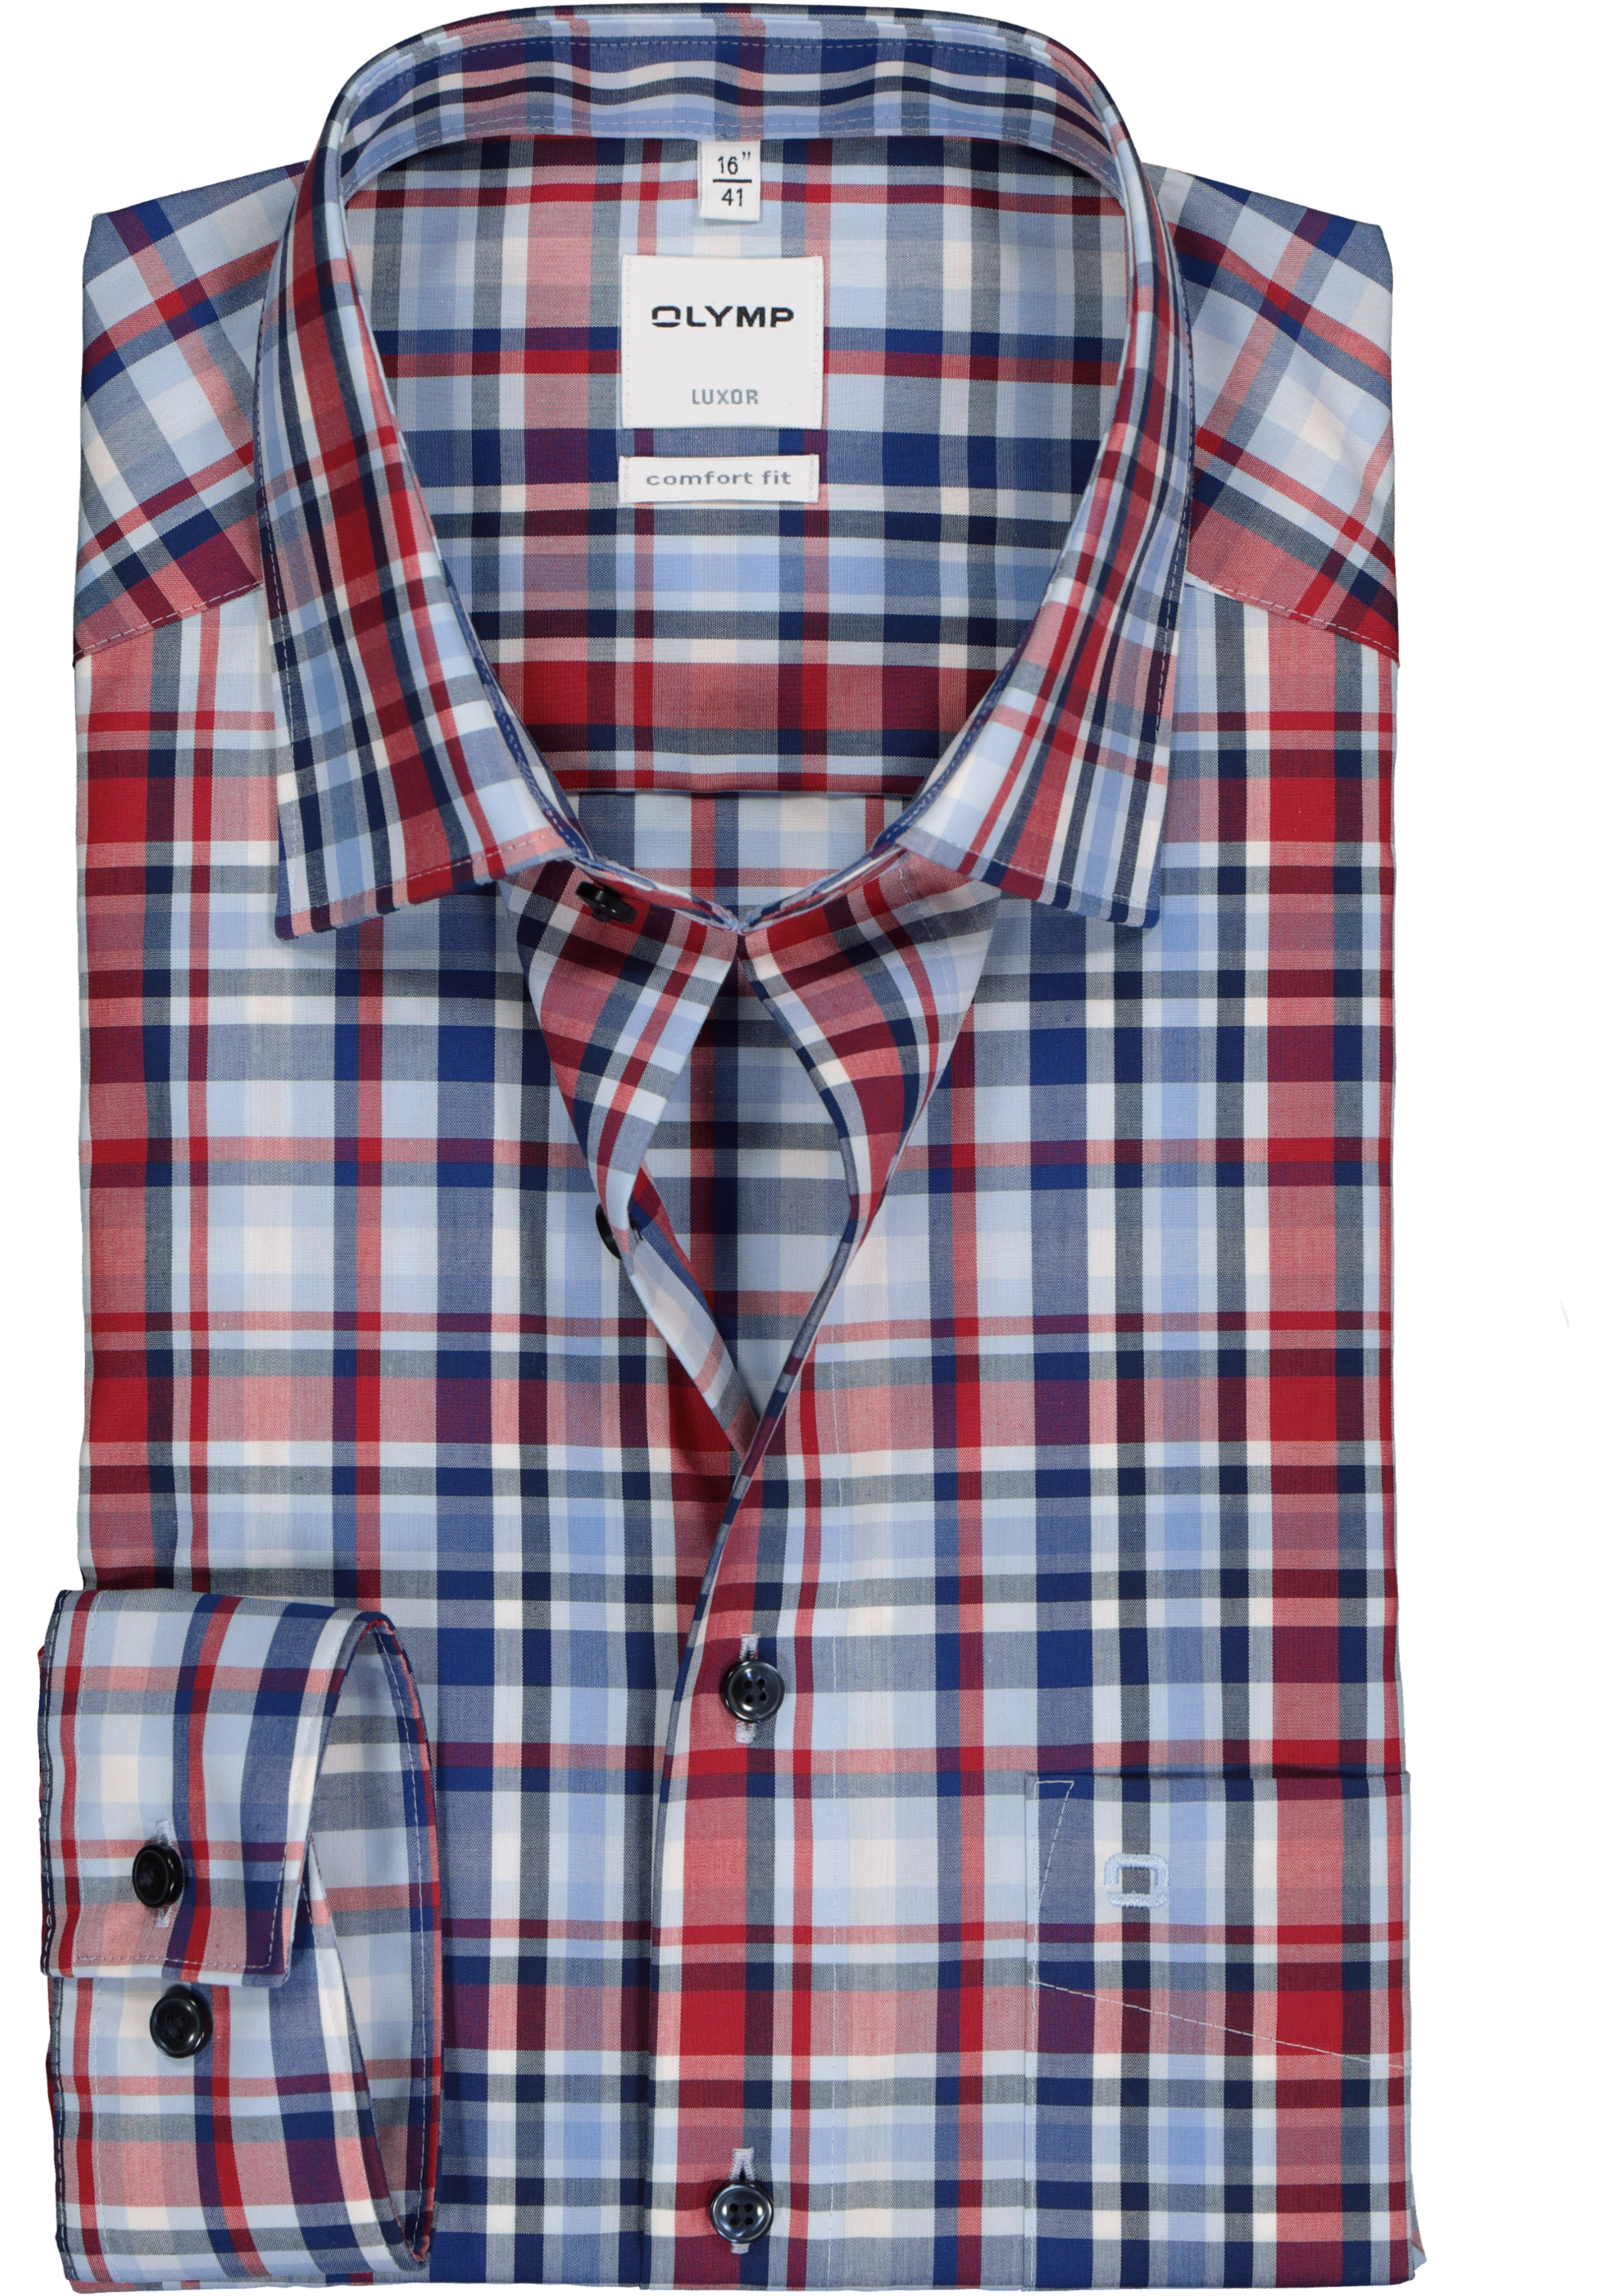 OLYMP Luxor comfort fit overhemd, mouwlengte 7, blauw met rood en wit geruit